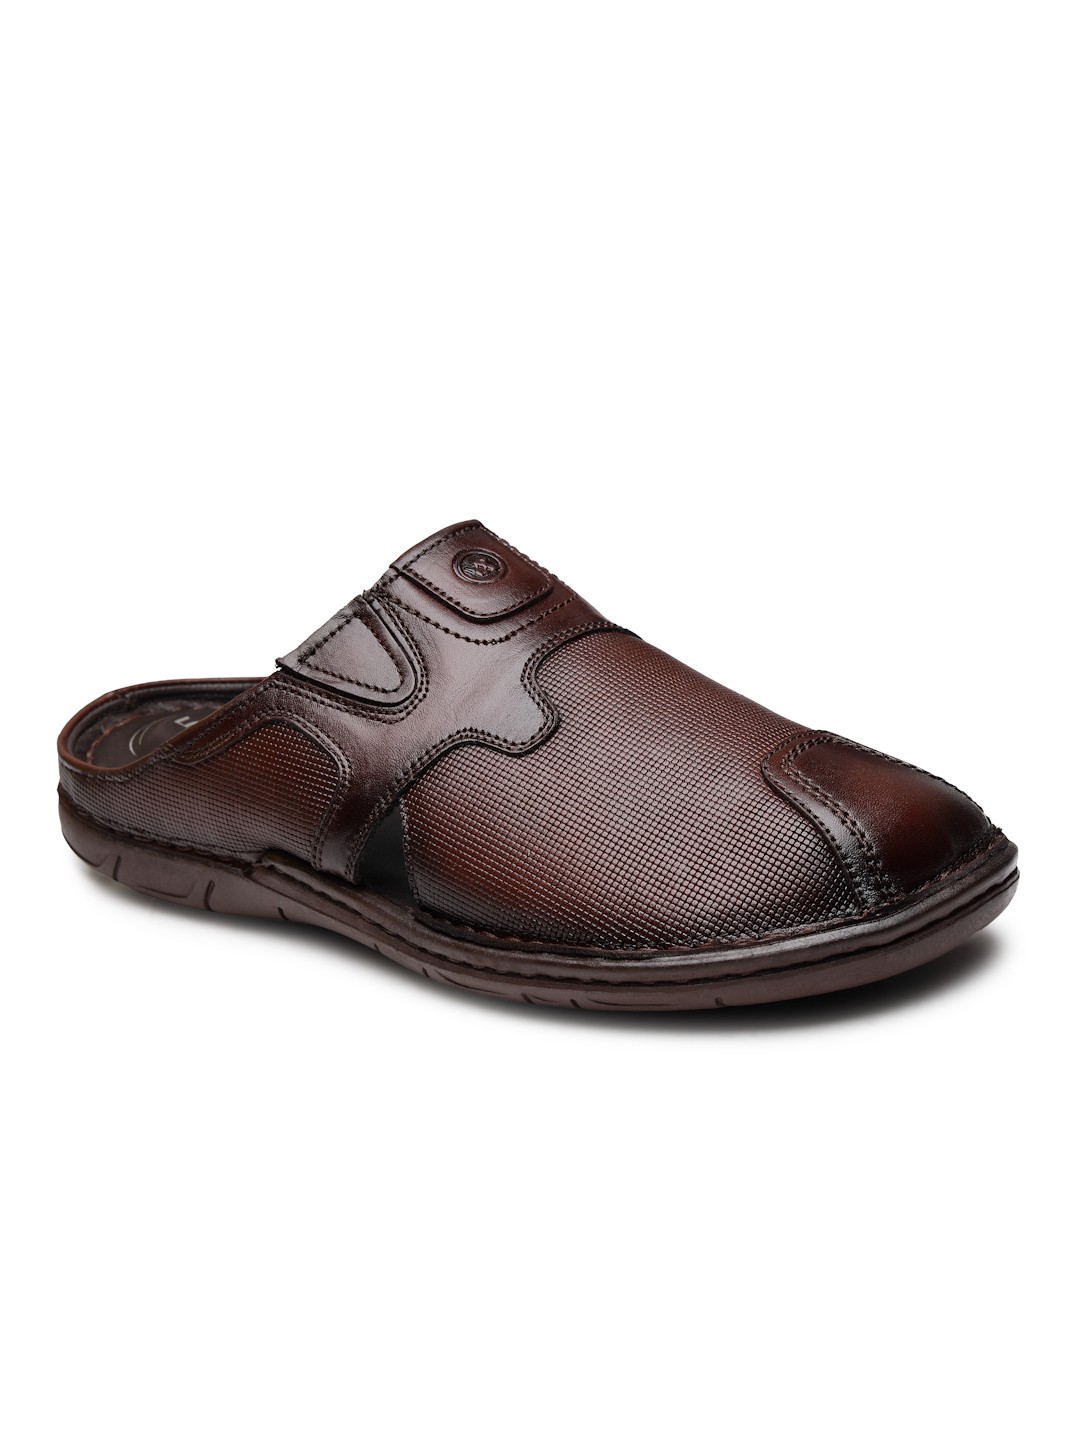 Buy Von Wellx Germany Comfort Men's Brown Slippers Arlo Online in Kozhikode